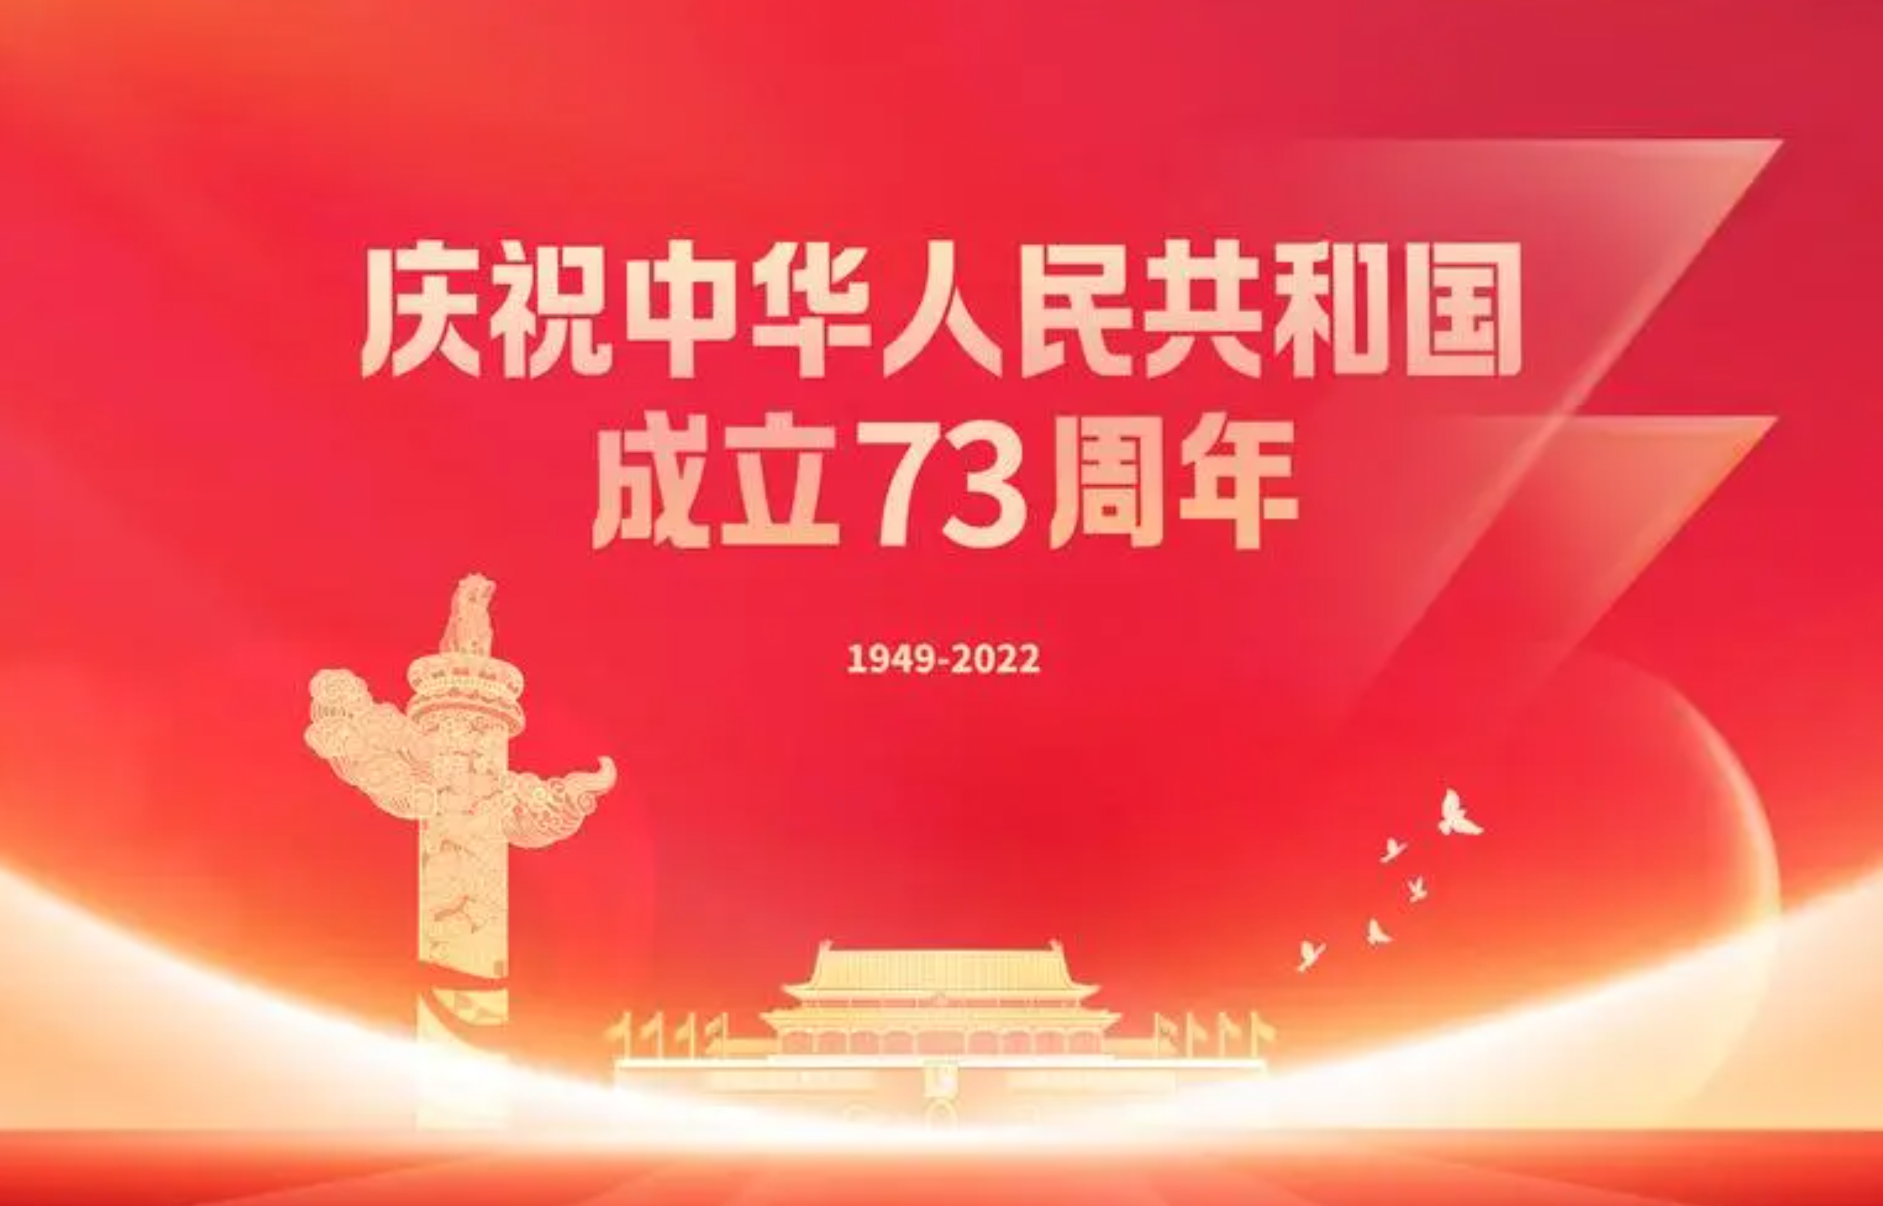 热烈庆祝中华人民共和国成立73周年！祝祖国繁荣昌盛国泰民安！